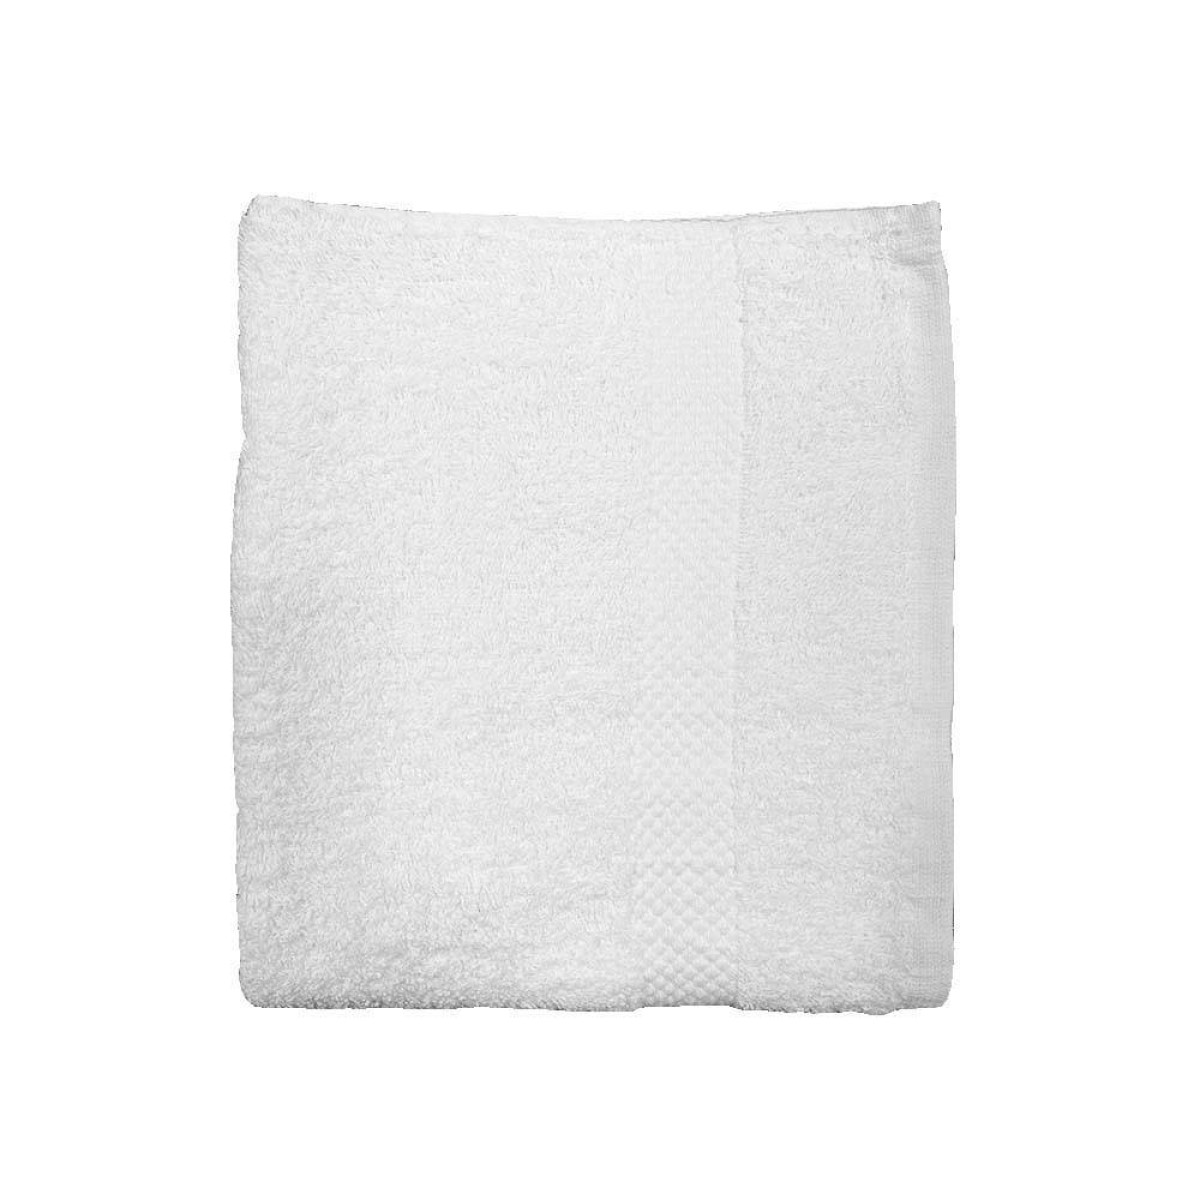 Πετσέτα Προσώπου 450grs (50x90) 100% Βαμβάκι με μπορντούρα με ανάγλυφο σχέδιο λευκό χρώμα Sidirela Toulip E-1765-6